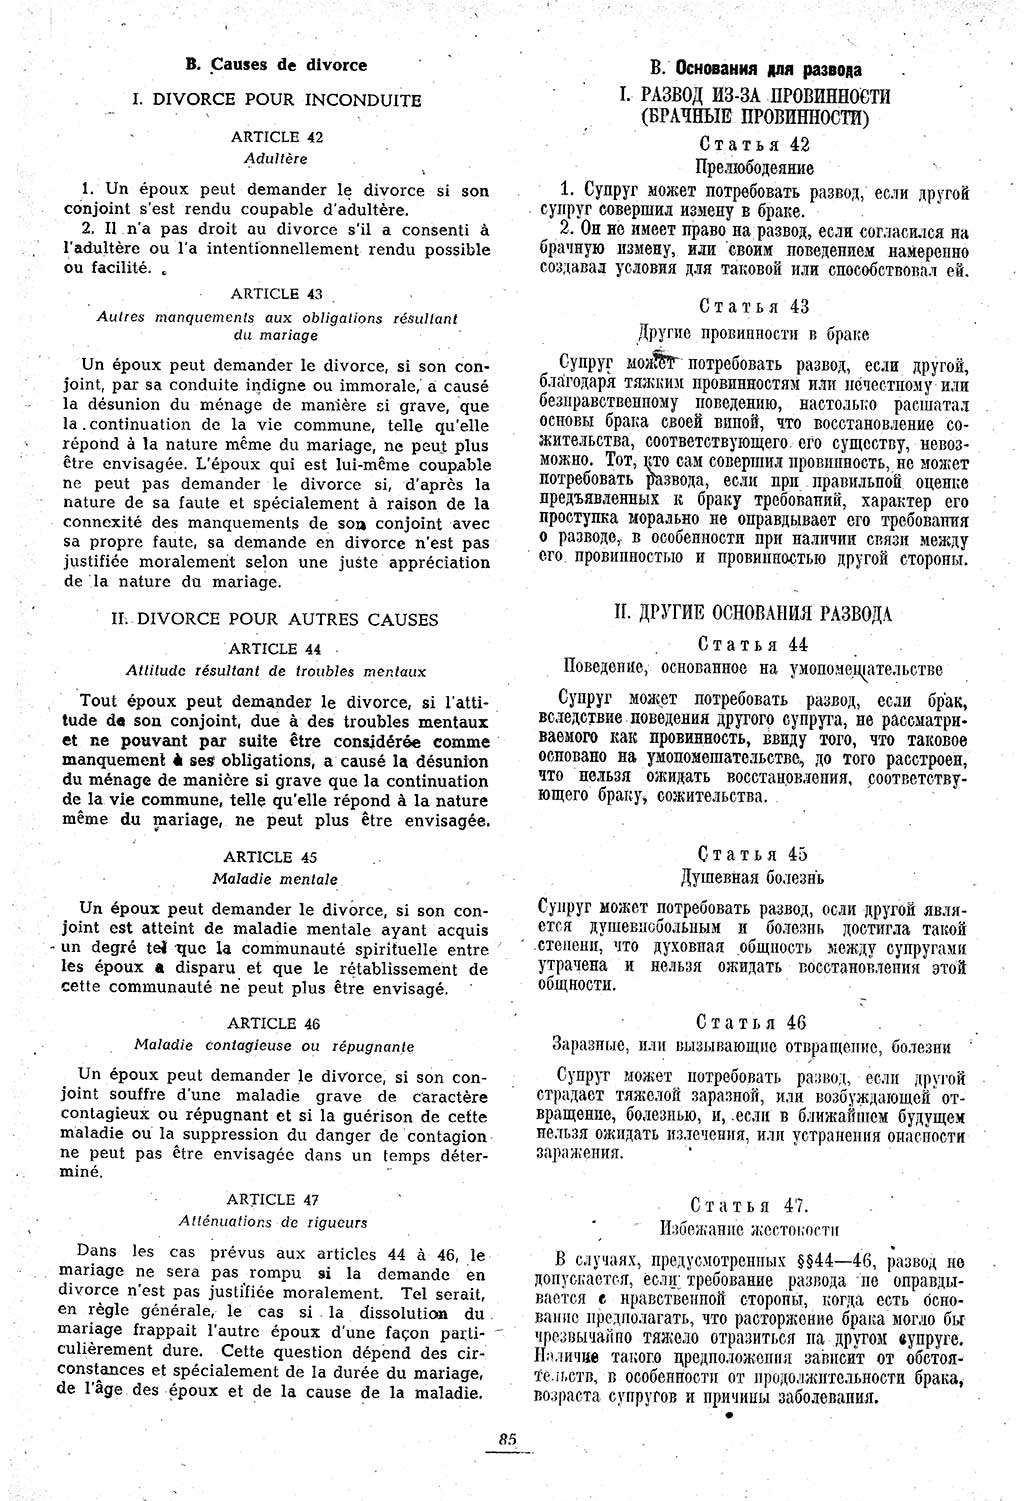 Amtsblatt des Kontrollrats (ABlKR) in Deutschland 1946, Seite 85/1 (ABlKR Dtl. 1946, S. 85/1)